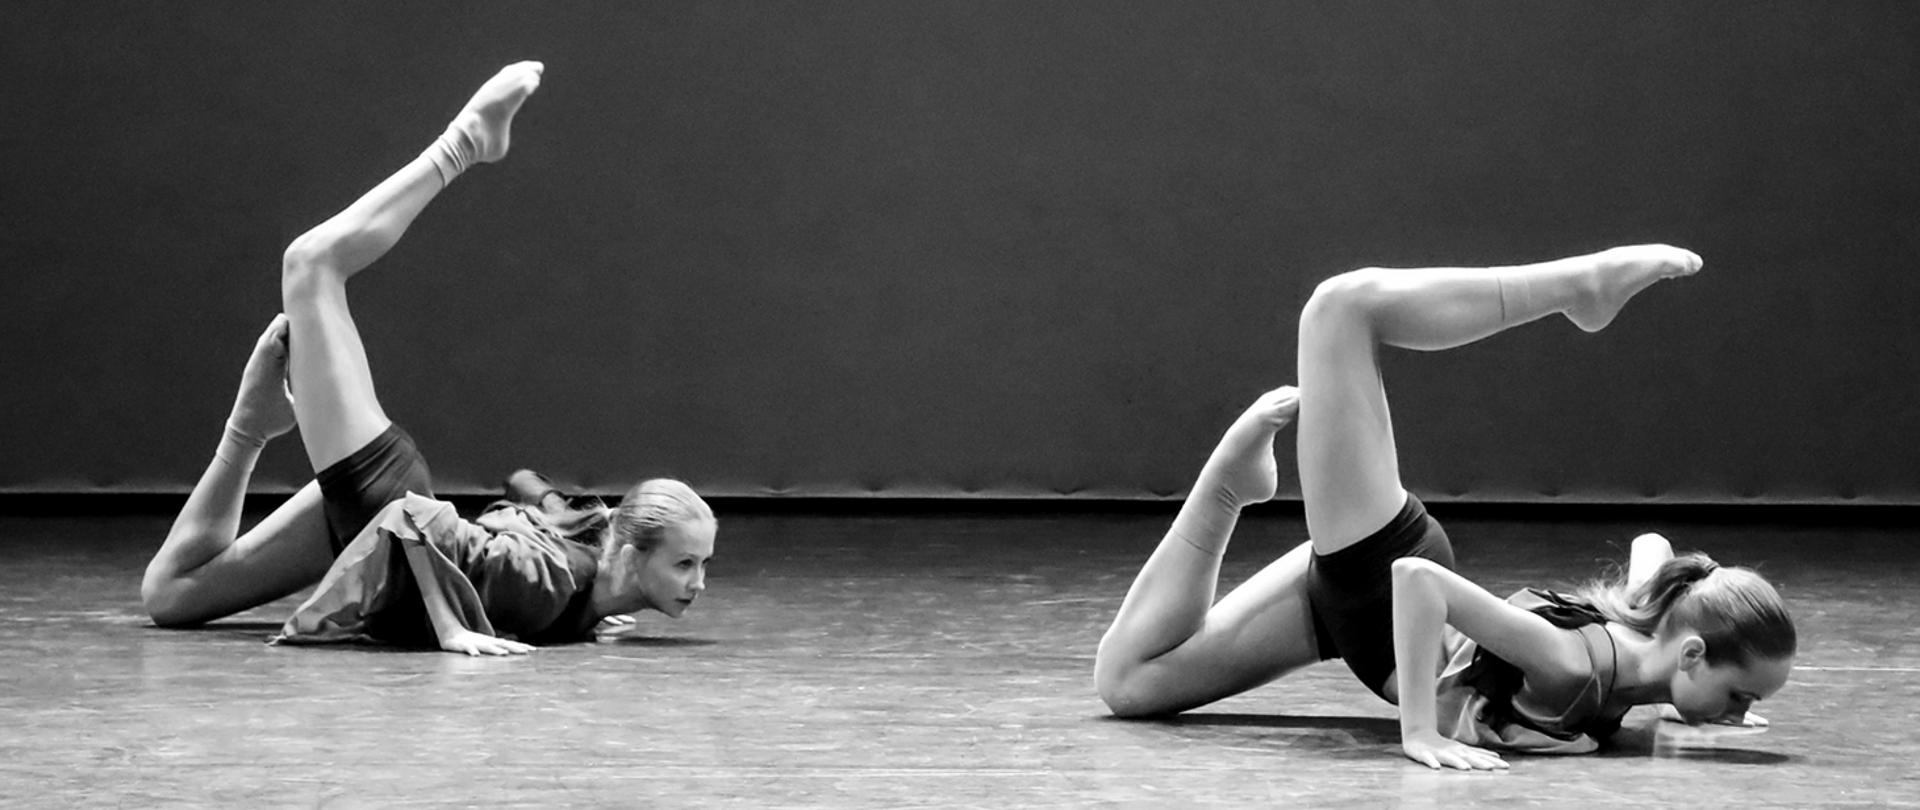 Czarno-białe zdjęcie, na scenie dwie tancerki w pozycji leżącej w trakcie tańca